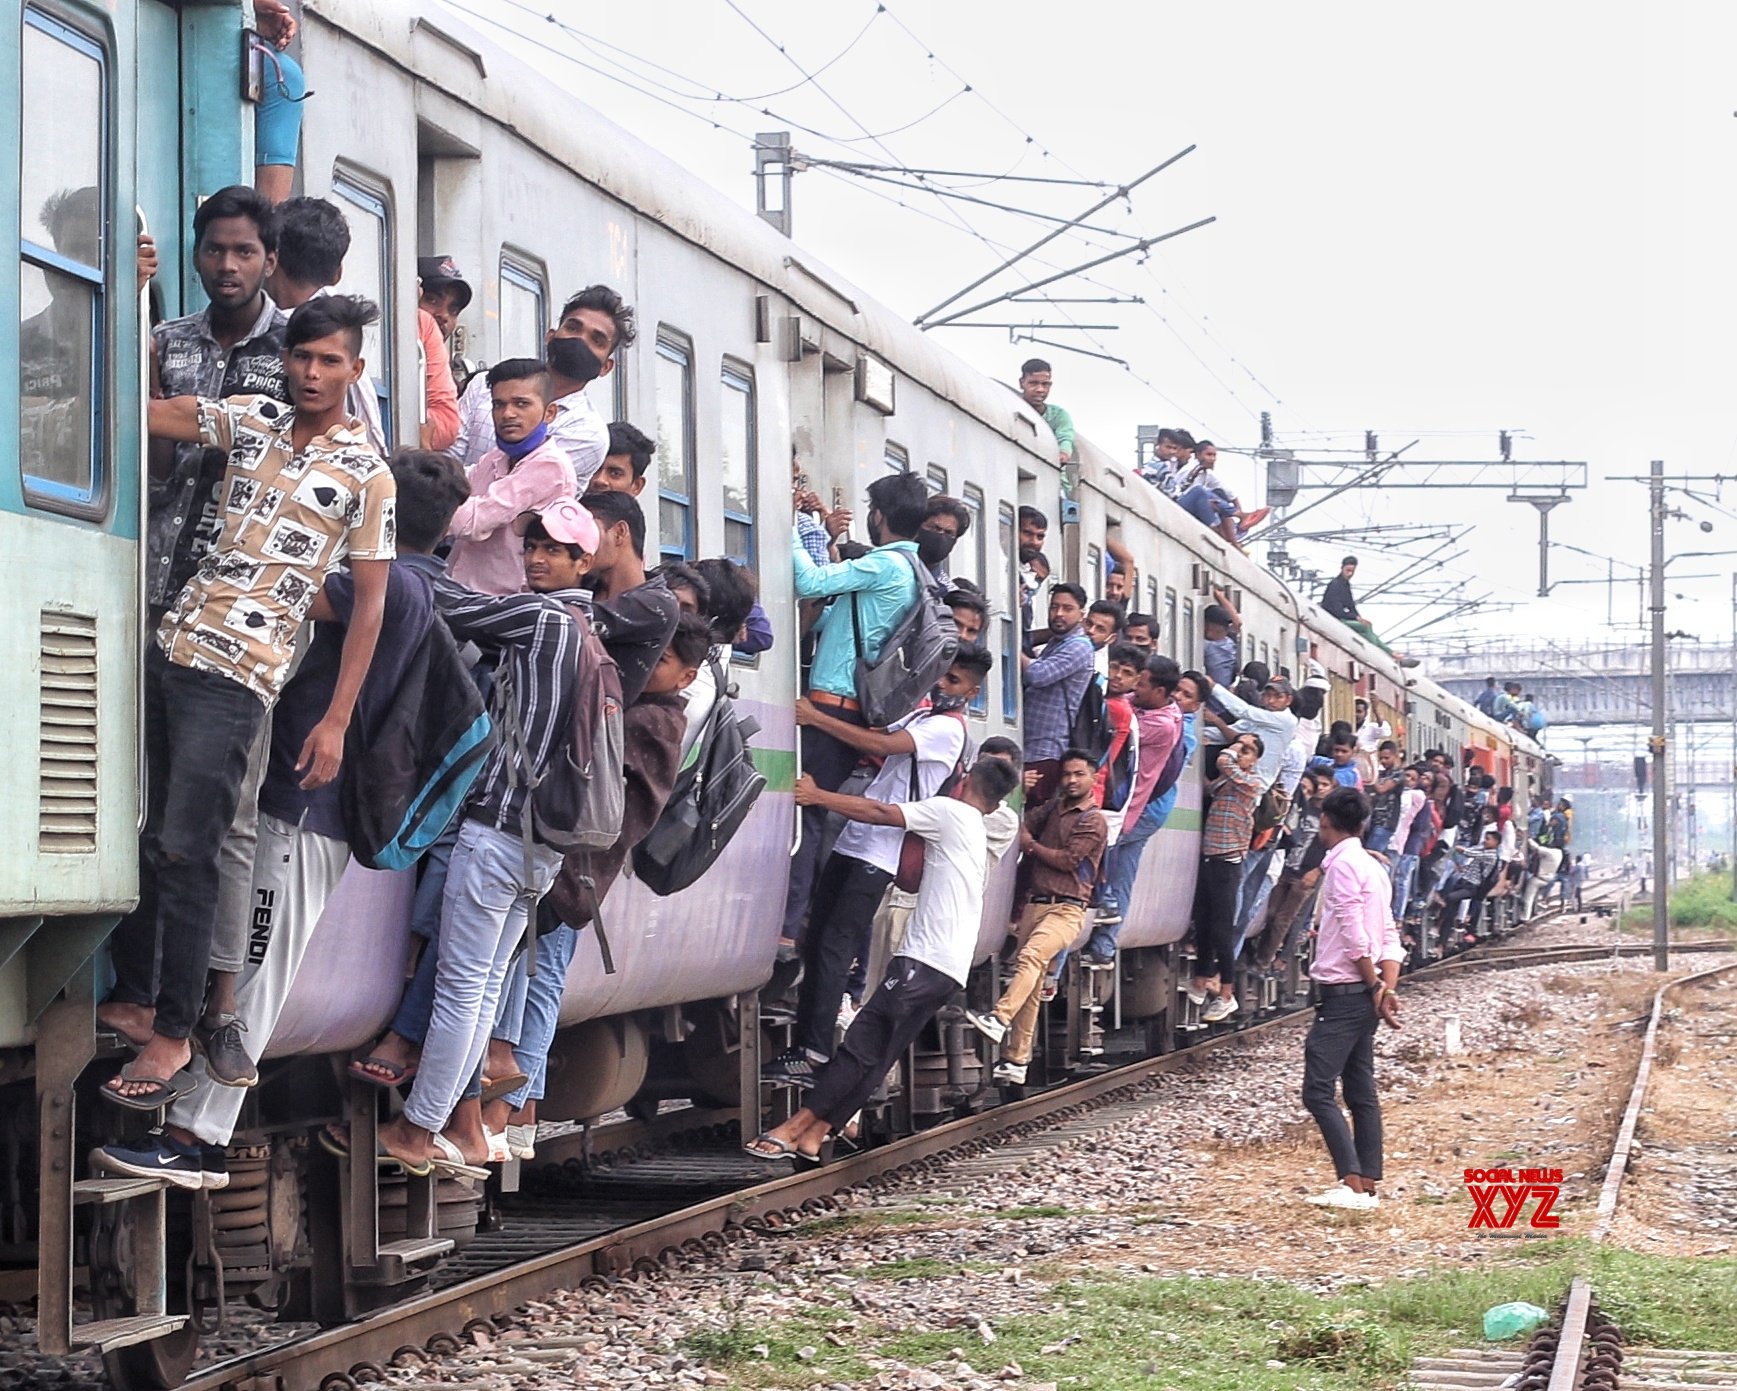 Γκαζιαμπάντ- Ινδία: Οι άνθρωποι προσκολλώνται σε ένα γεμάτο τρένο καθώς φεύγουν από το σταθμό Noli. Εικόνες. - Φωτογραφία 1